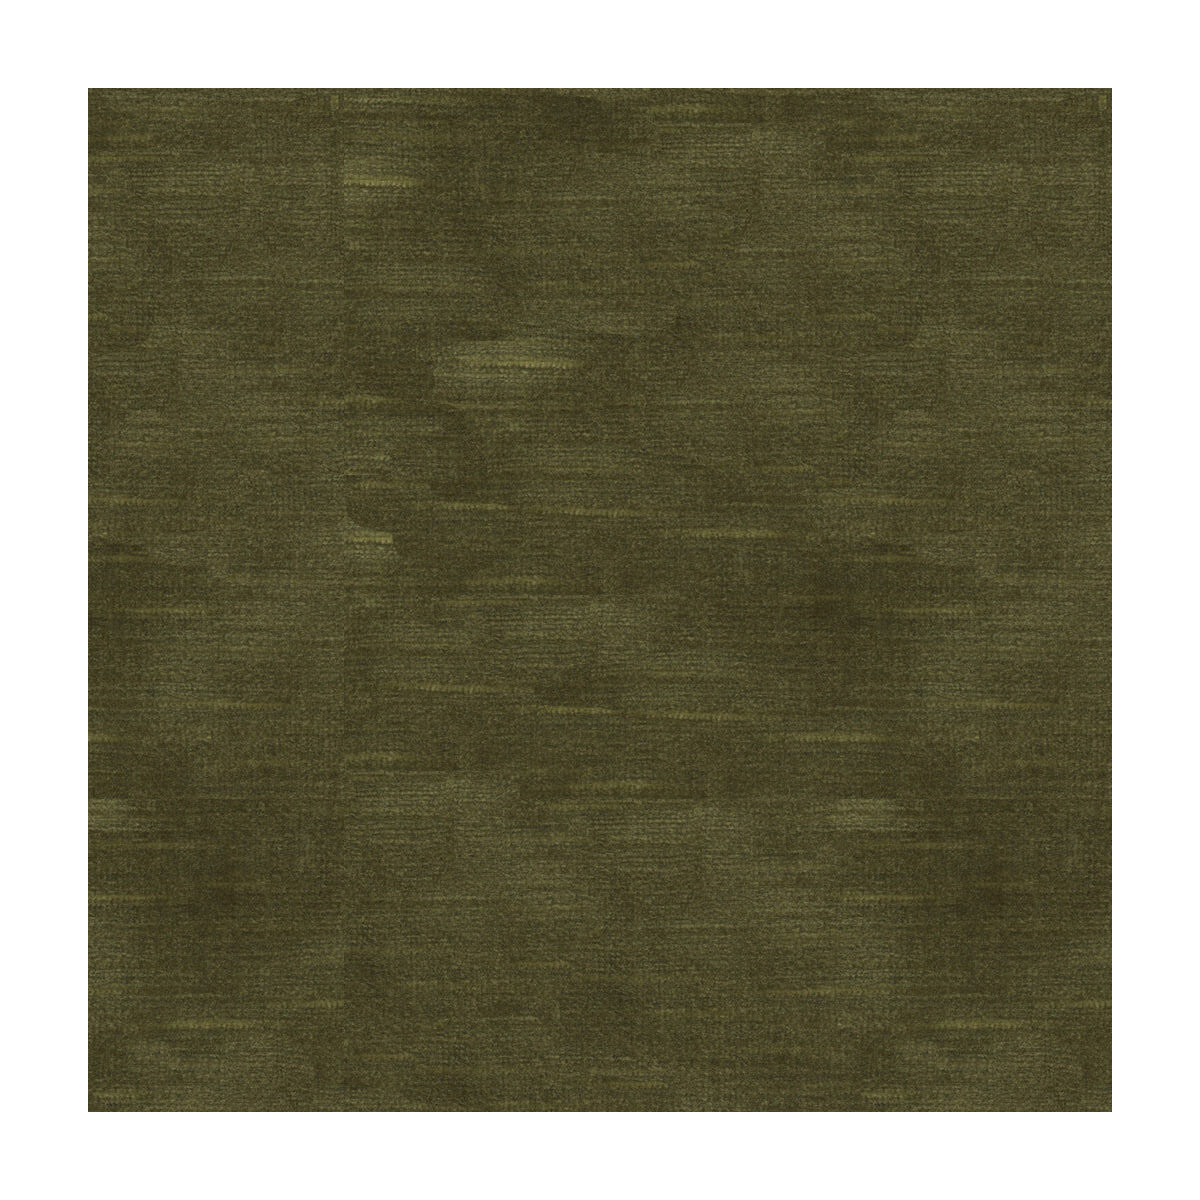 Lazare Velvet fabric in olive color - pattern 8016103.3.0 - by Brunschwig &amp; Fils